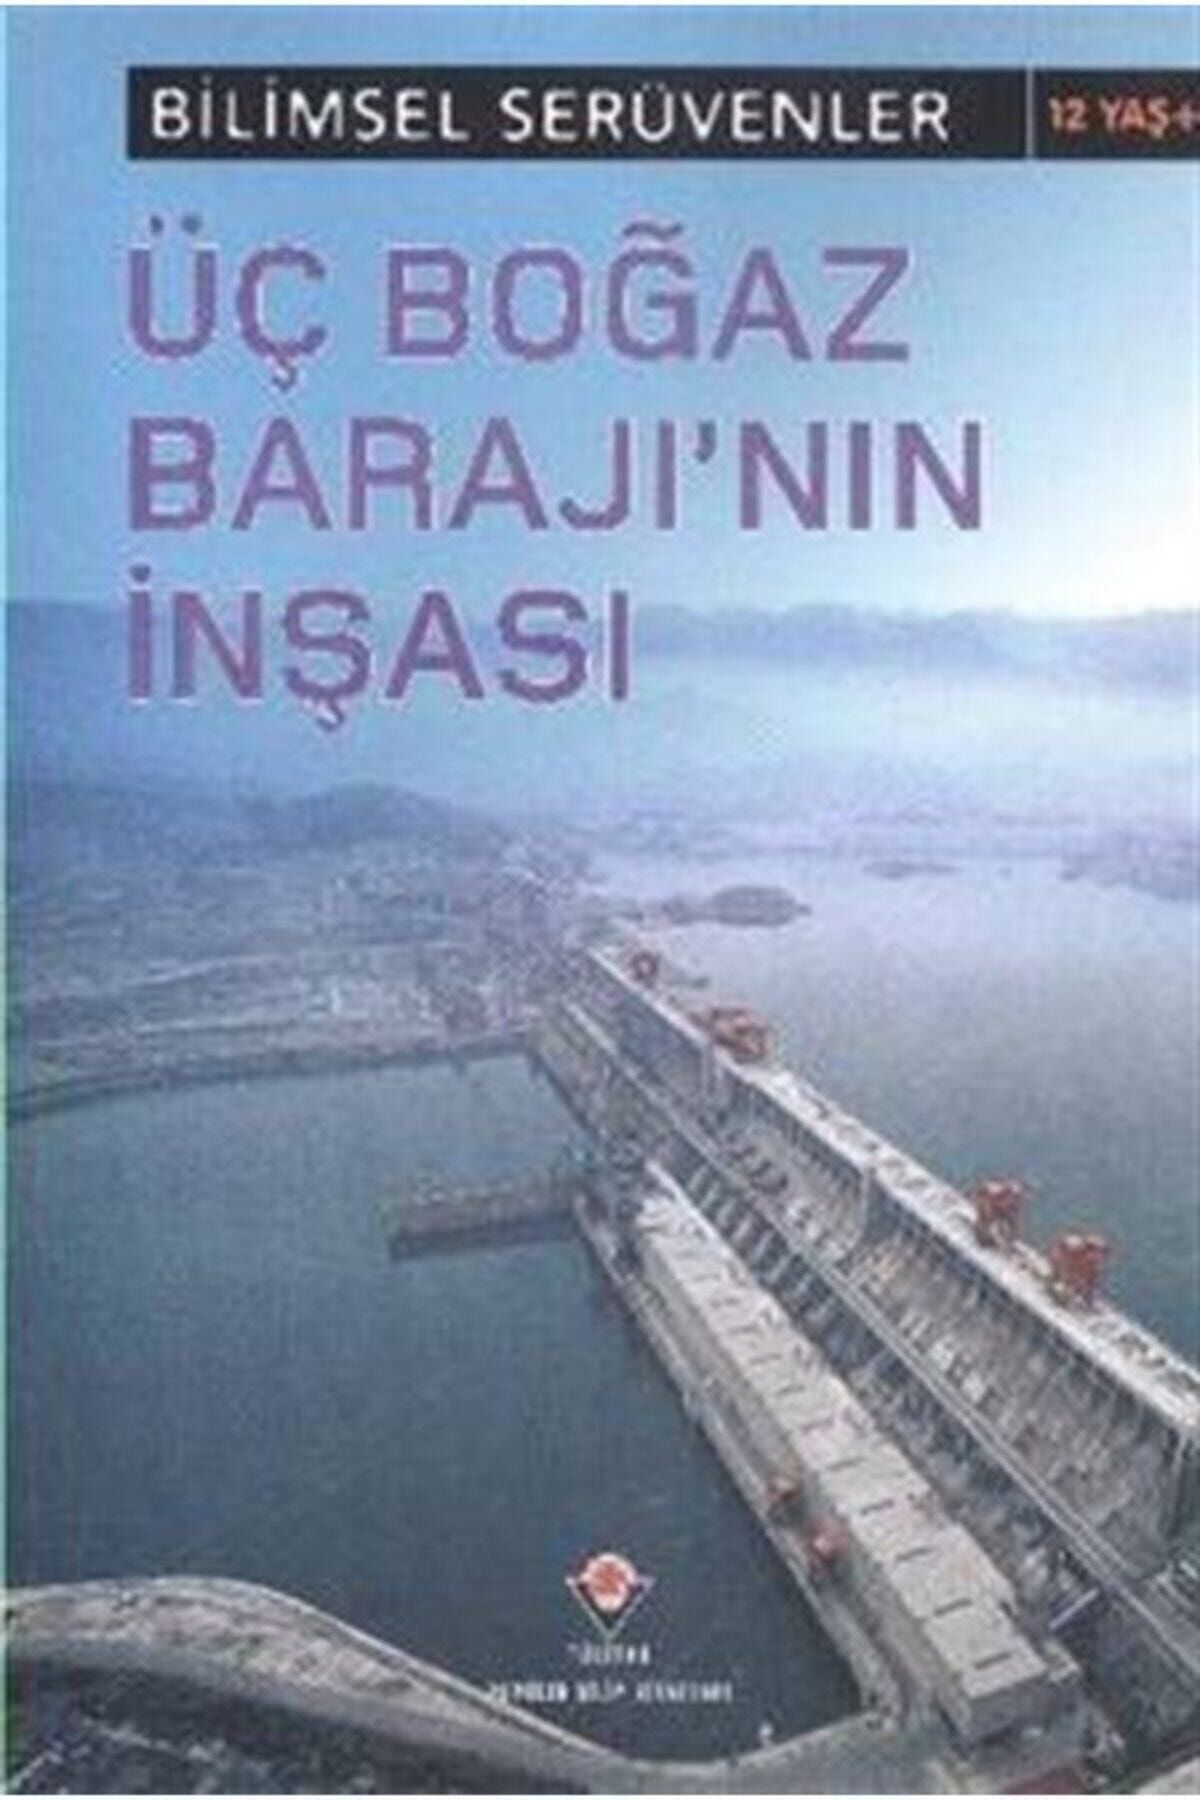 Tübitak Yayınları Bilimsel Serüvenler - Üç Boğaz Barajı'nın Inşası L.patricia Kite - L.patricia Kite